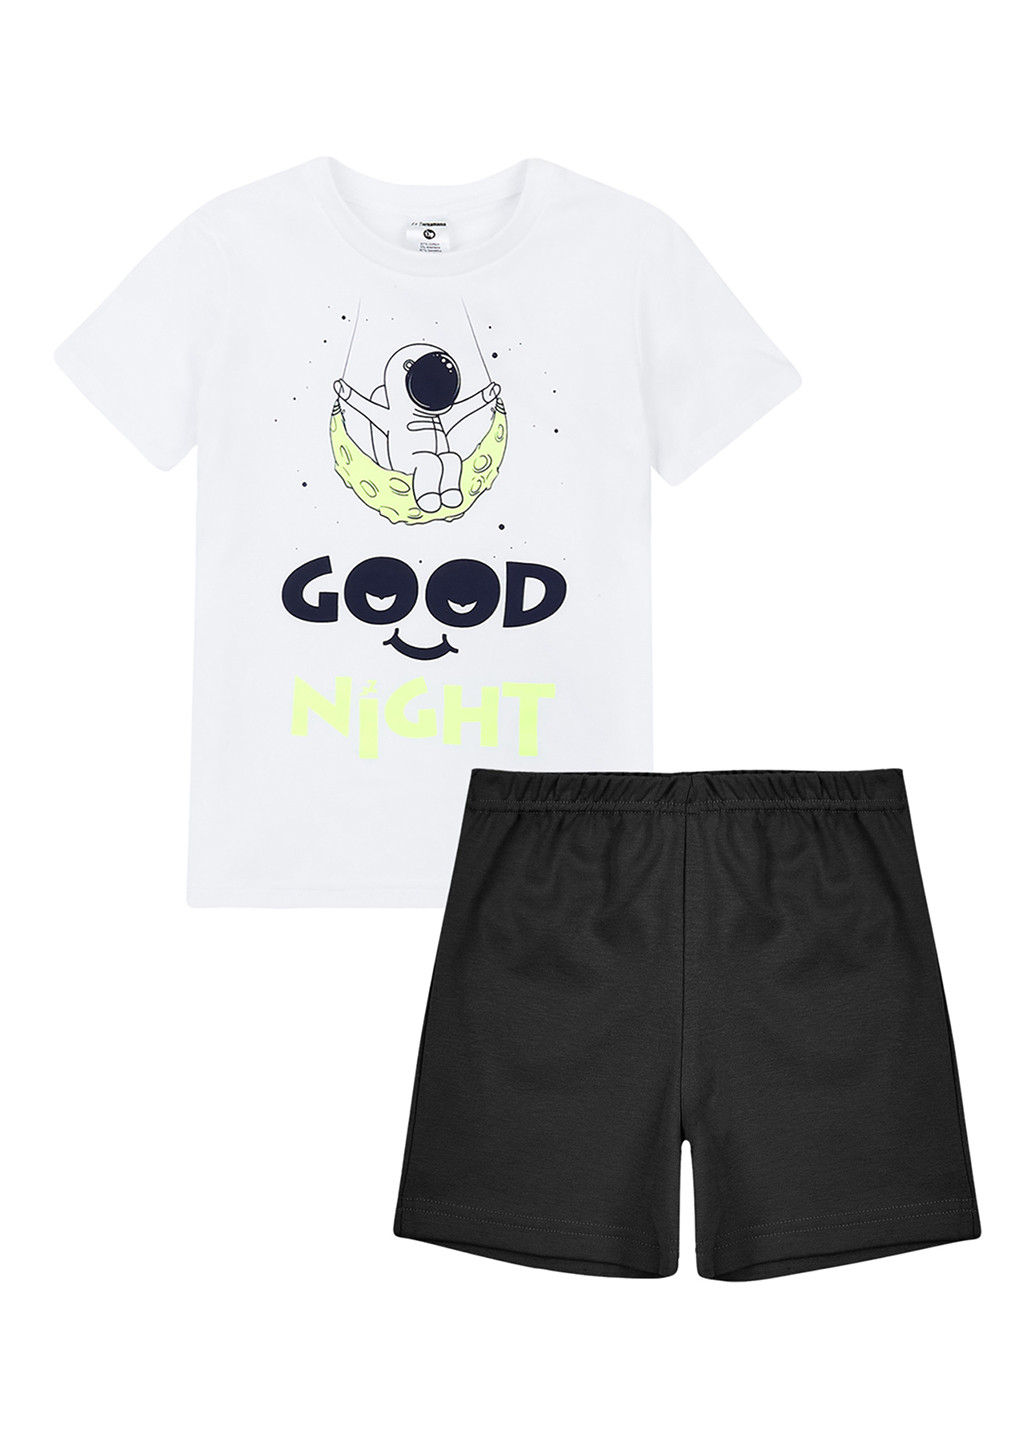 Черно-белая всесезон пижама (футболка, шорты) футболка + шорты Garnamama